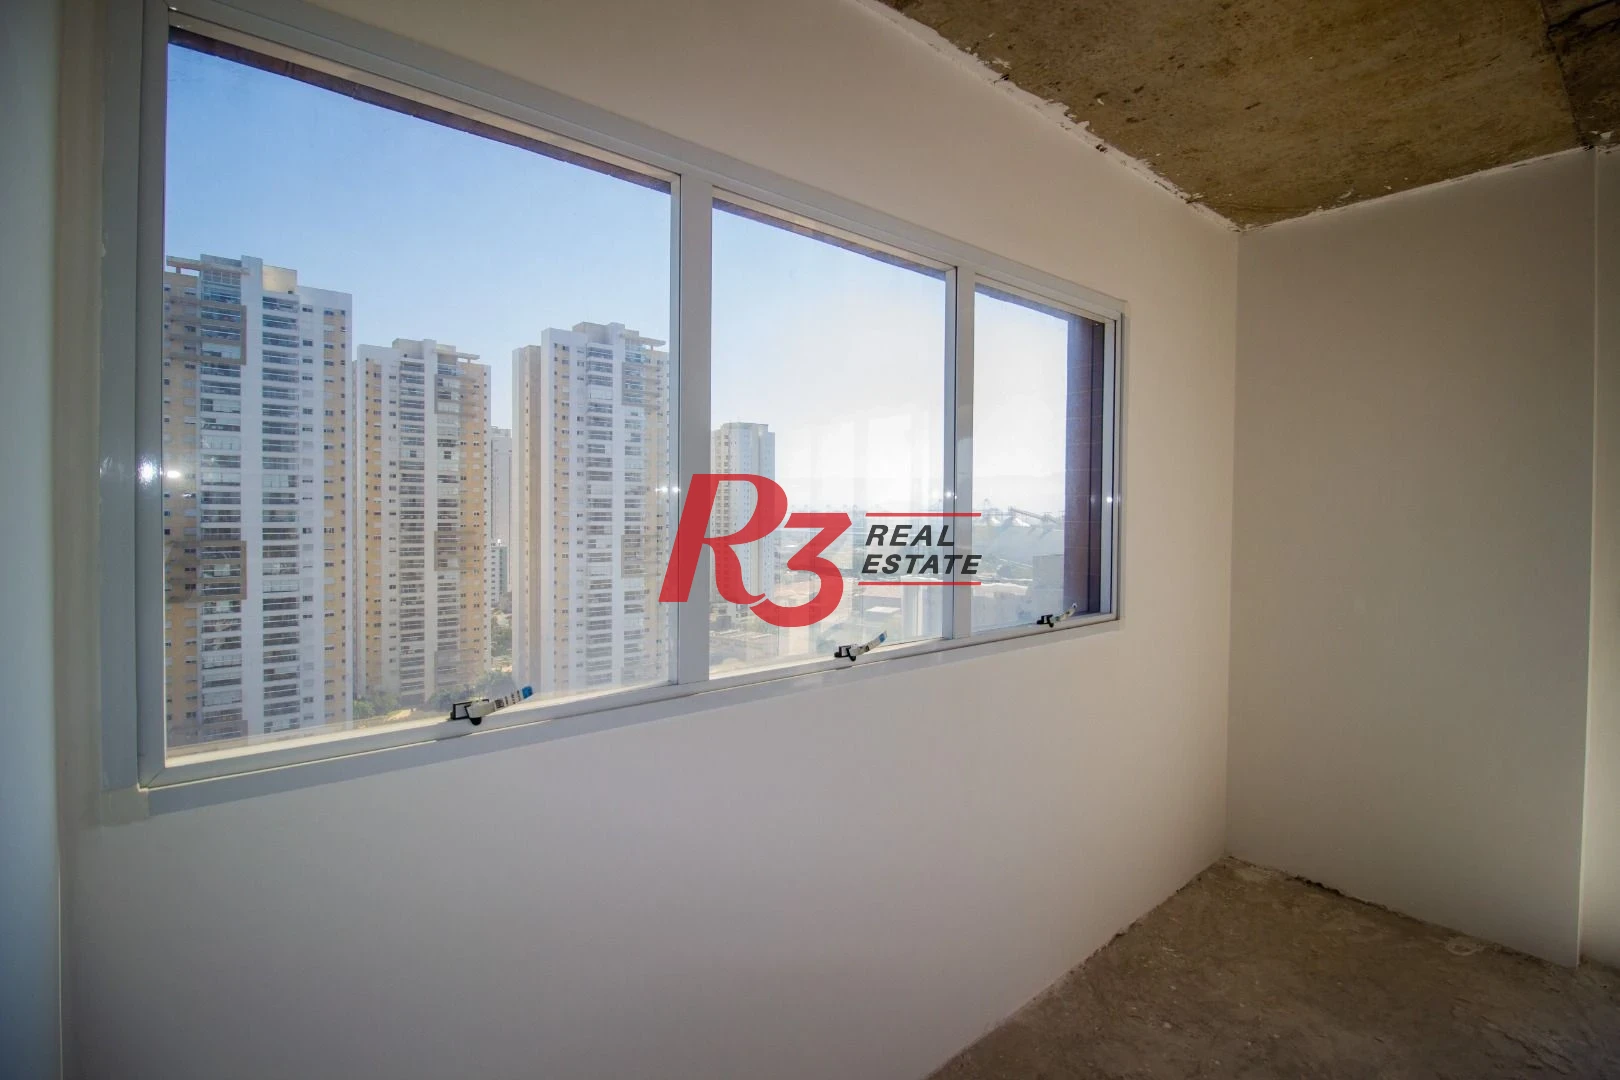 Sala à venda, 36 m² por R$ 344.850,00 - Ponta da Praia - Santos/SP